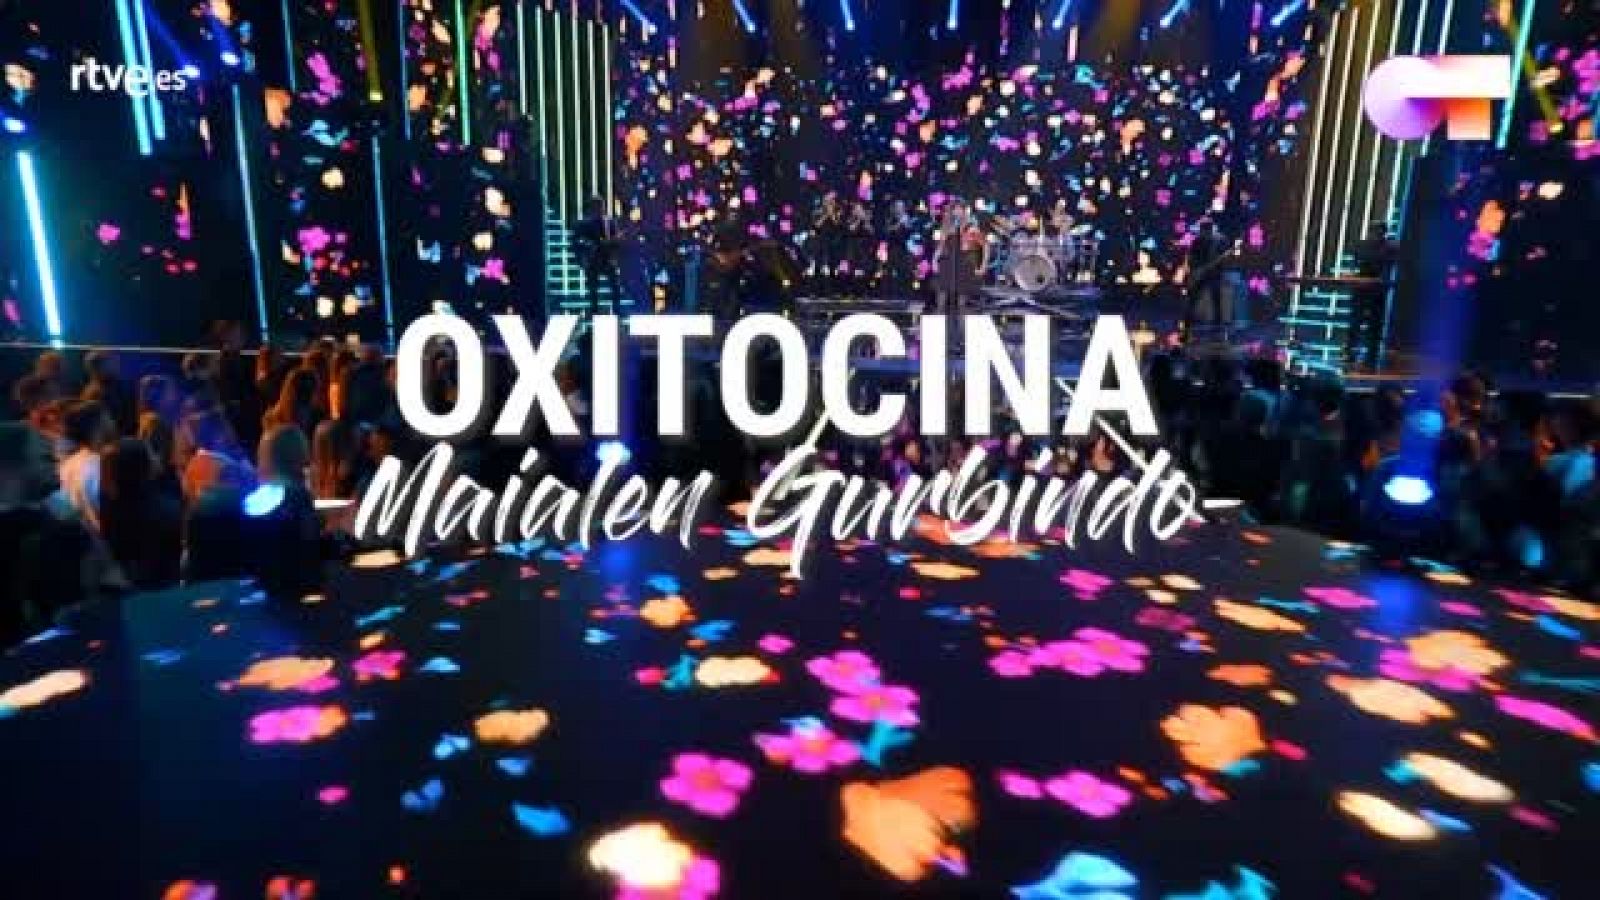 OT 2020 - La letra de "Oxitocina", la canción que ha compuesto Maialen